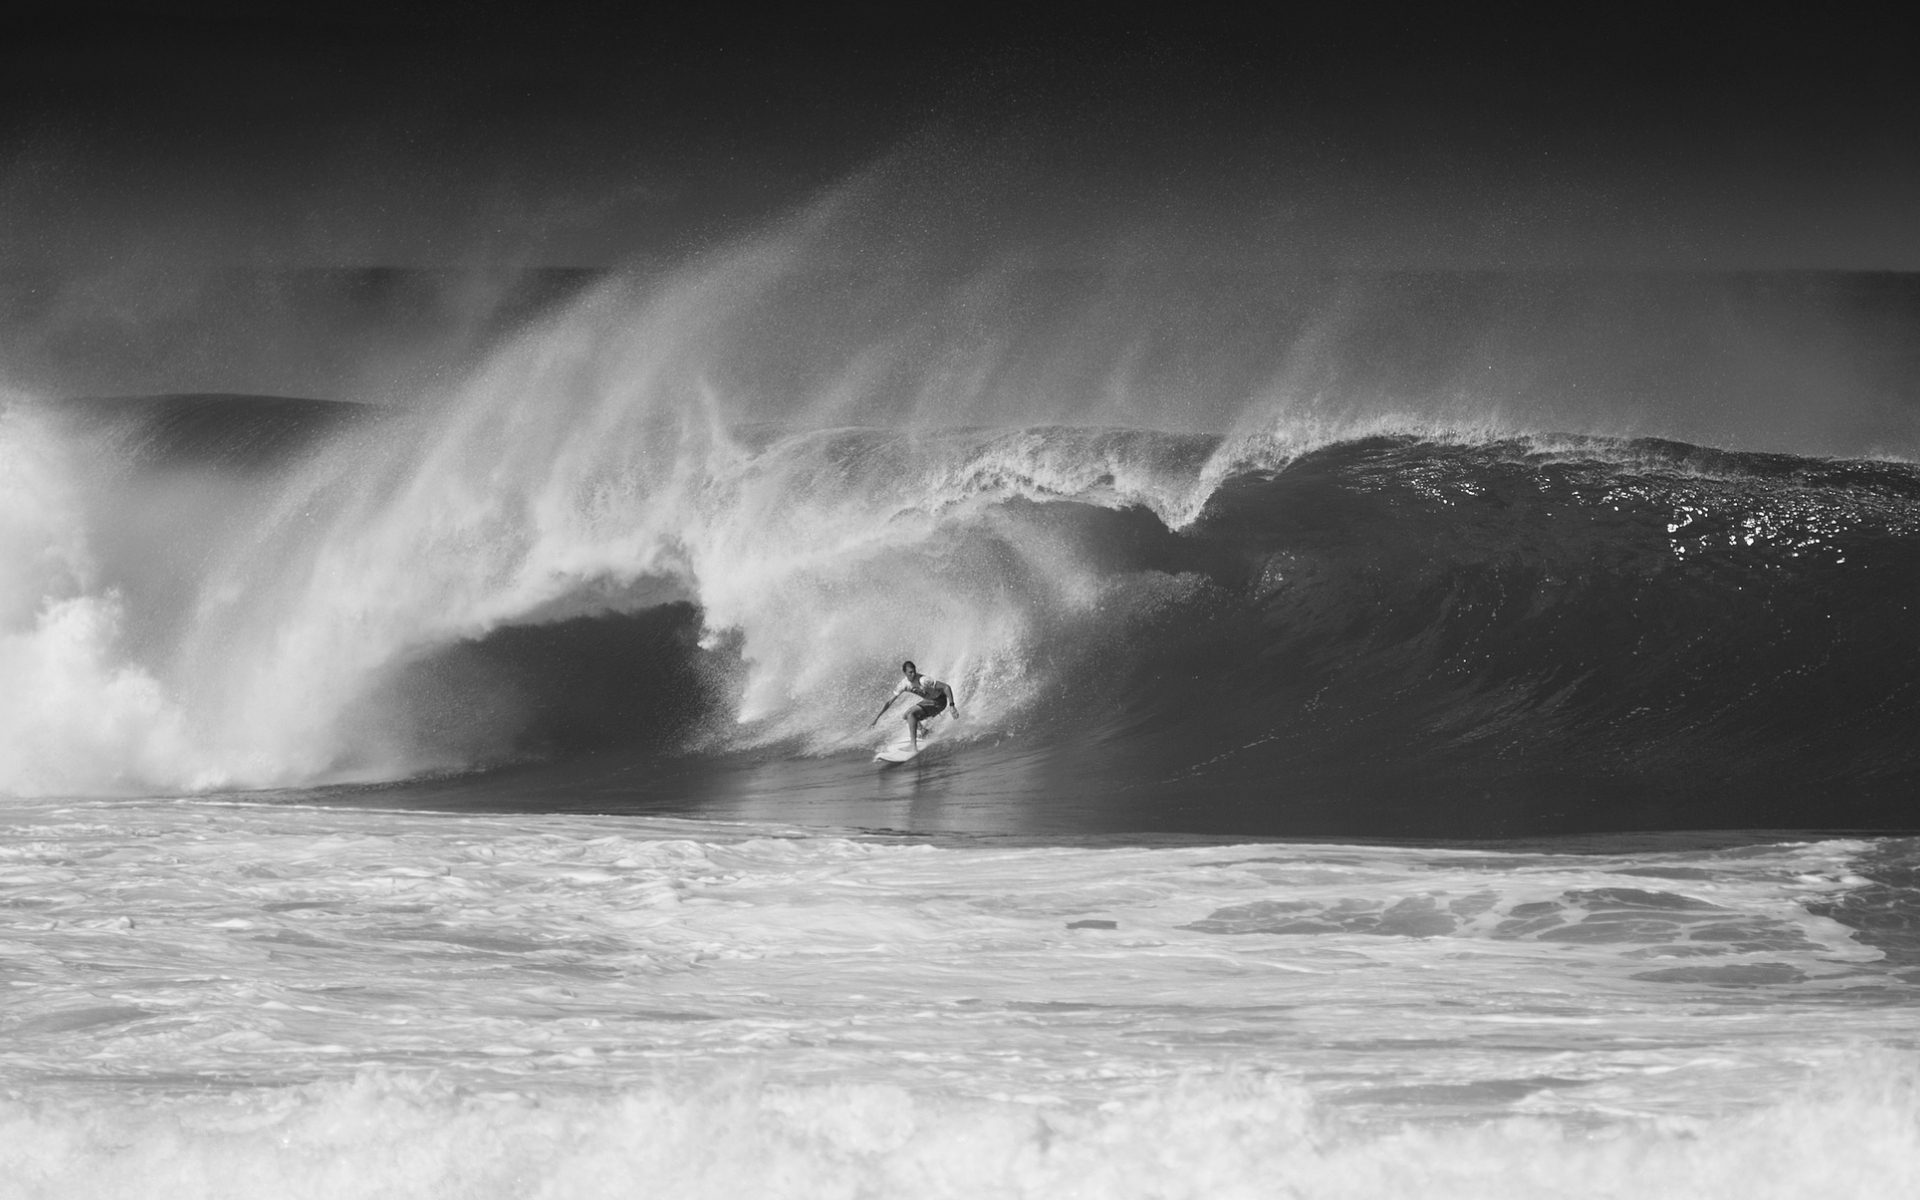 cерфигист, oahu, волна, hawaii, north shore, черно-белое фото, океан